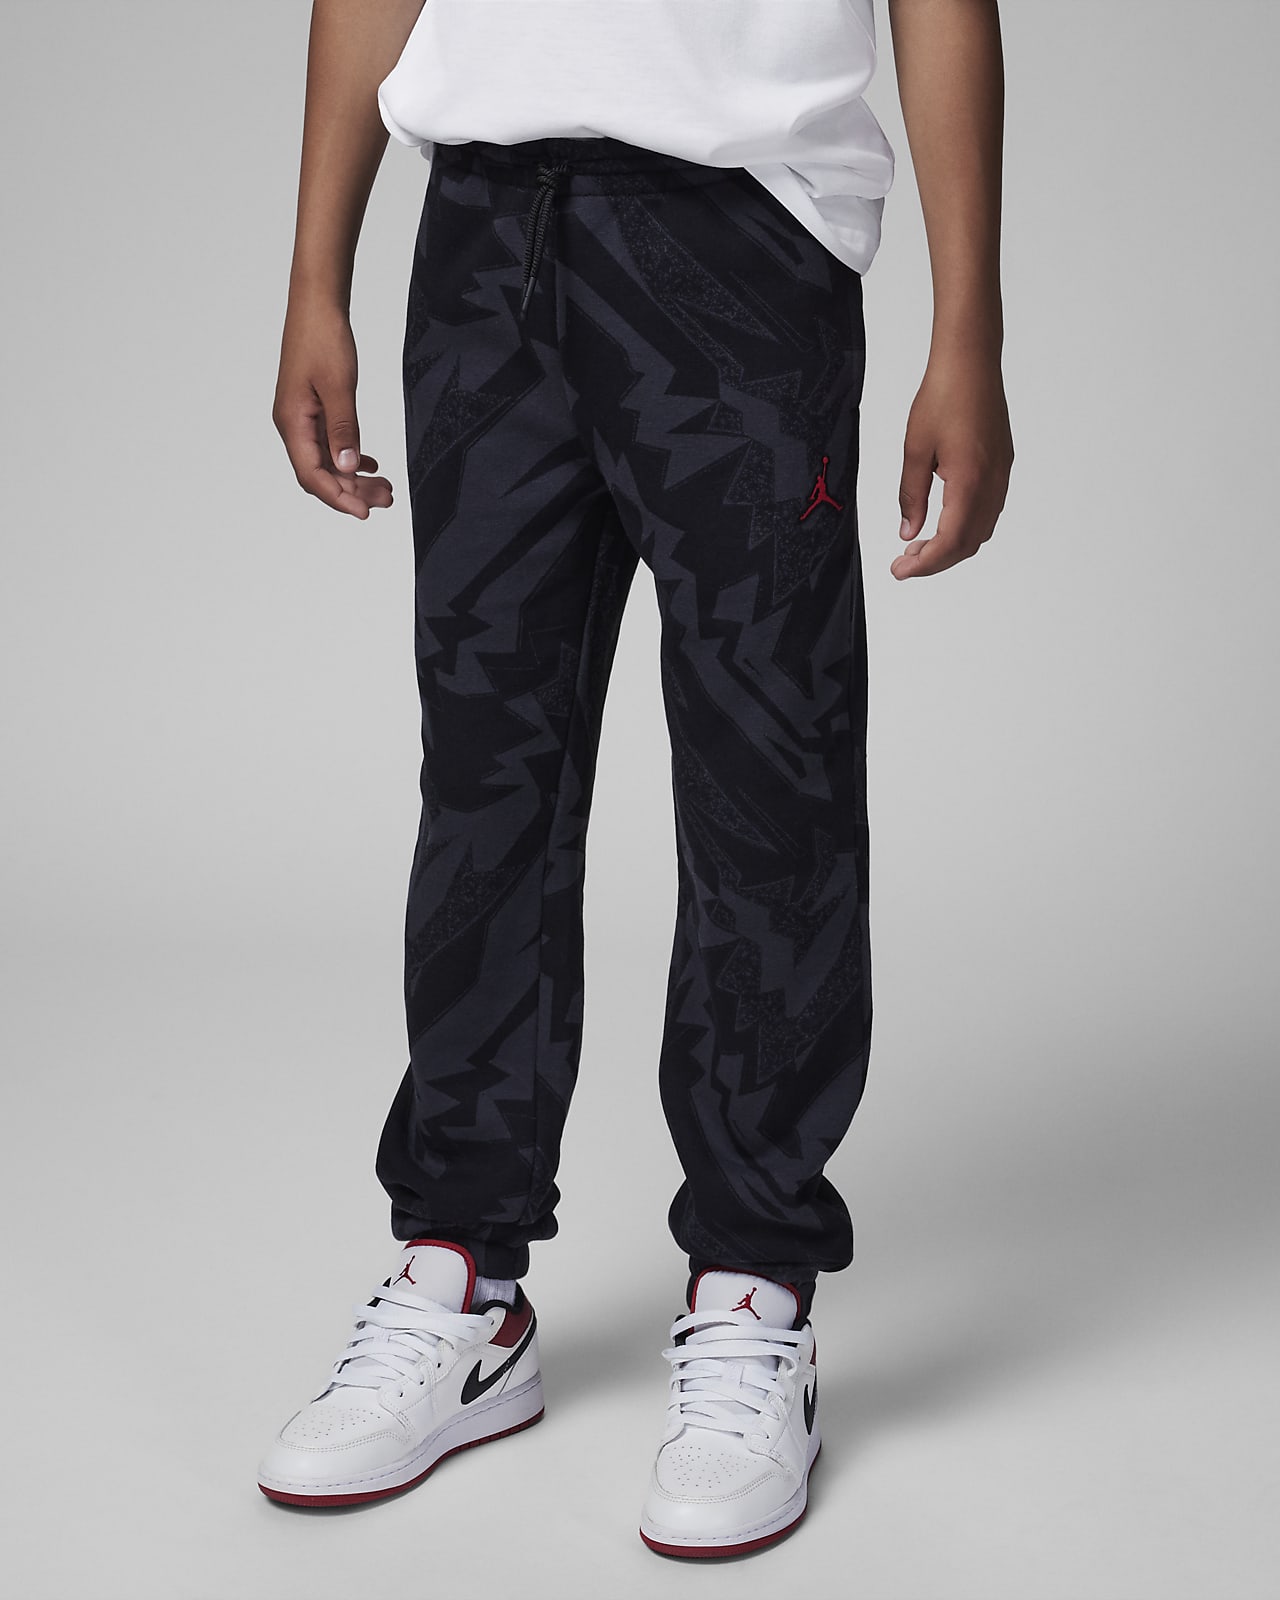 Nike Air Jordan Gray Jogger Sweatpants Big Jumpman Logo Youth XL